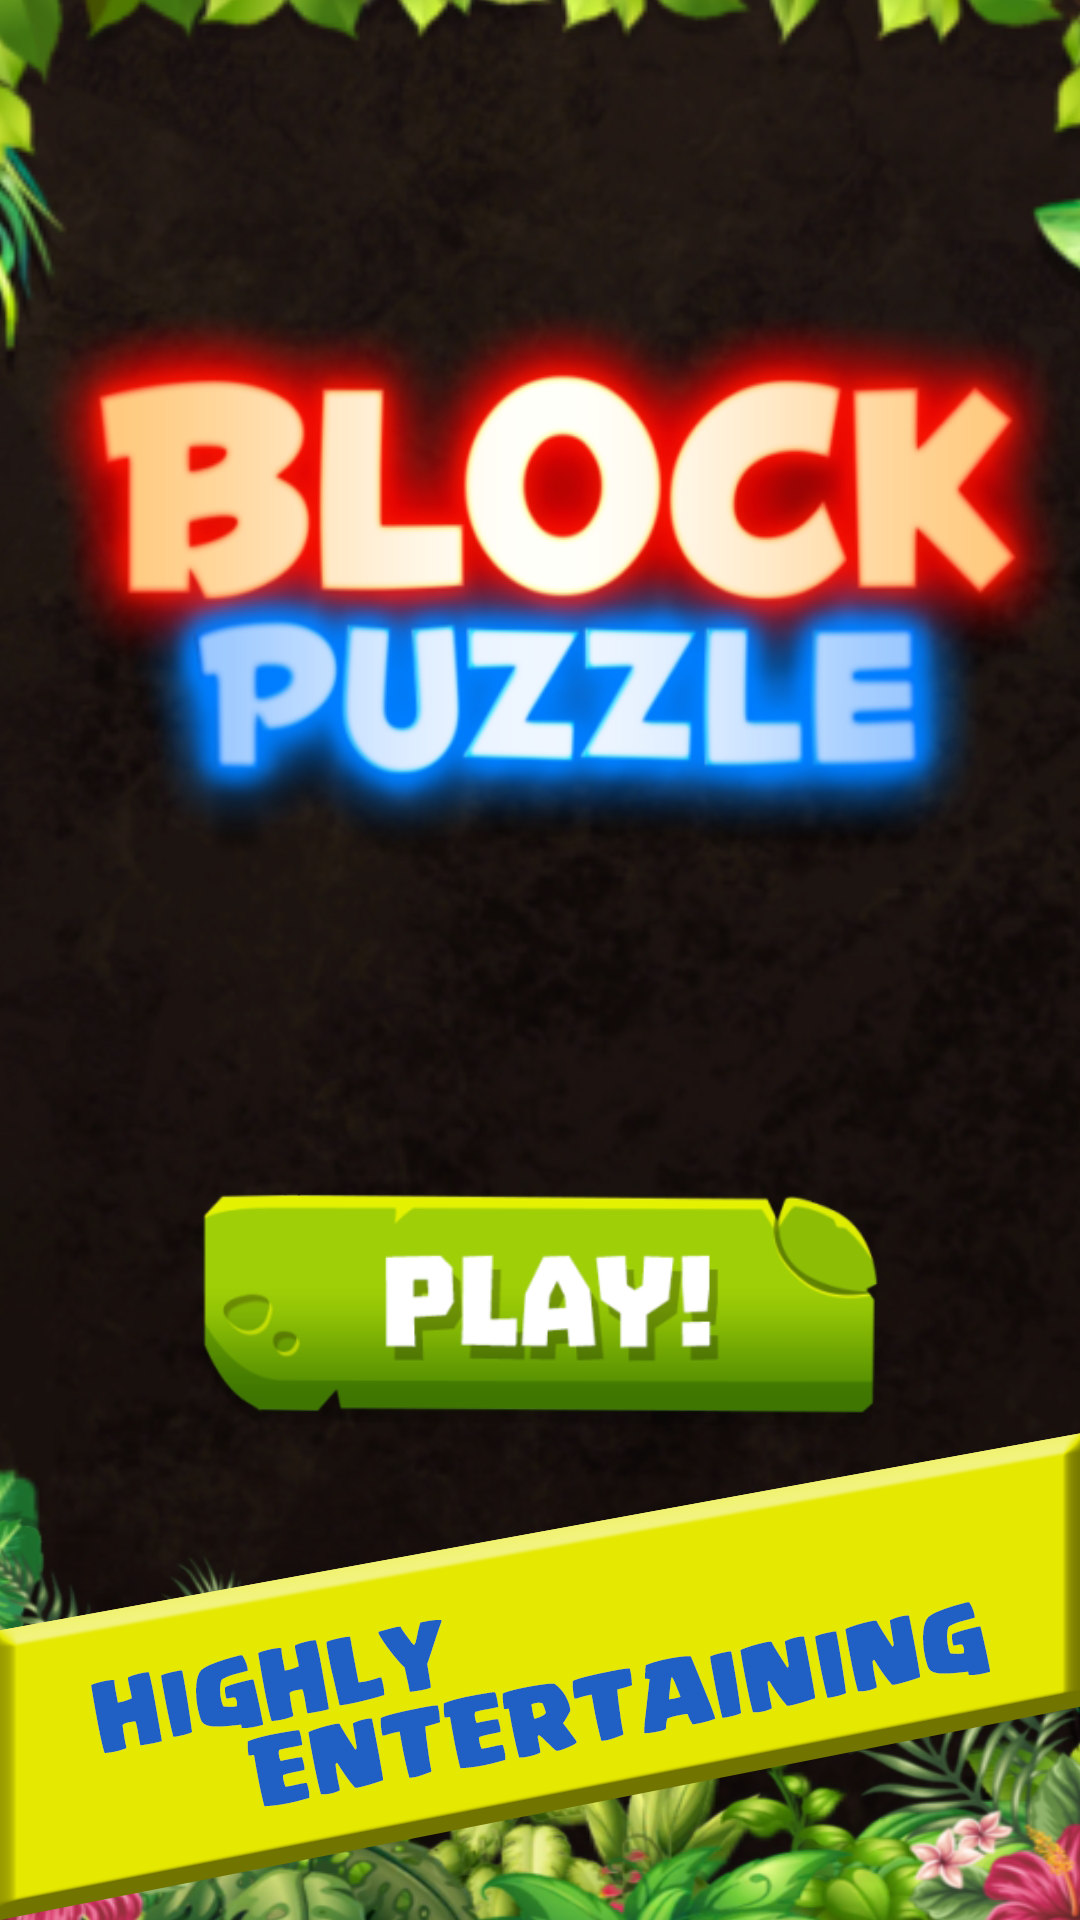 Block Puzzle Bricksのキャプチャ